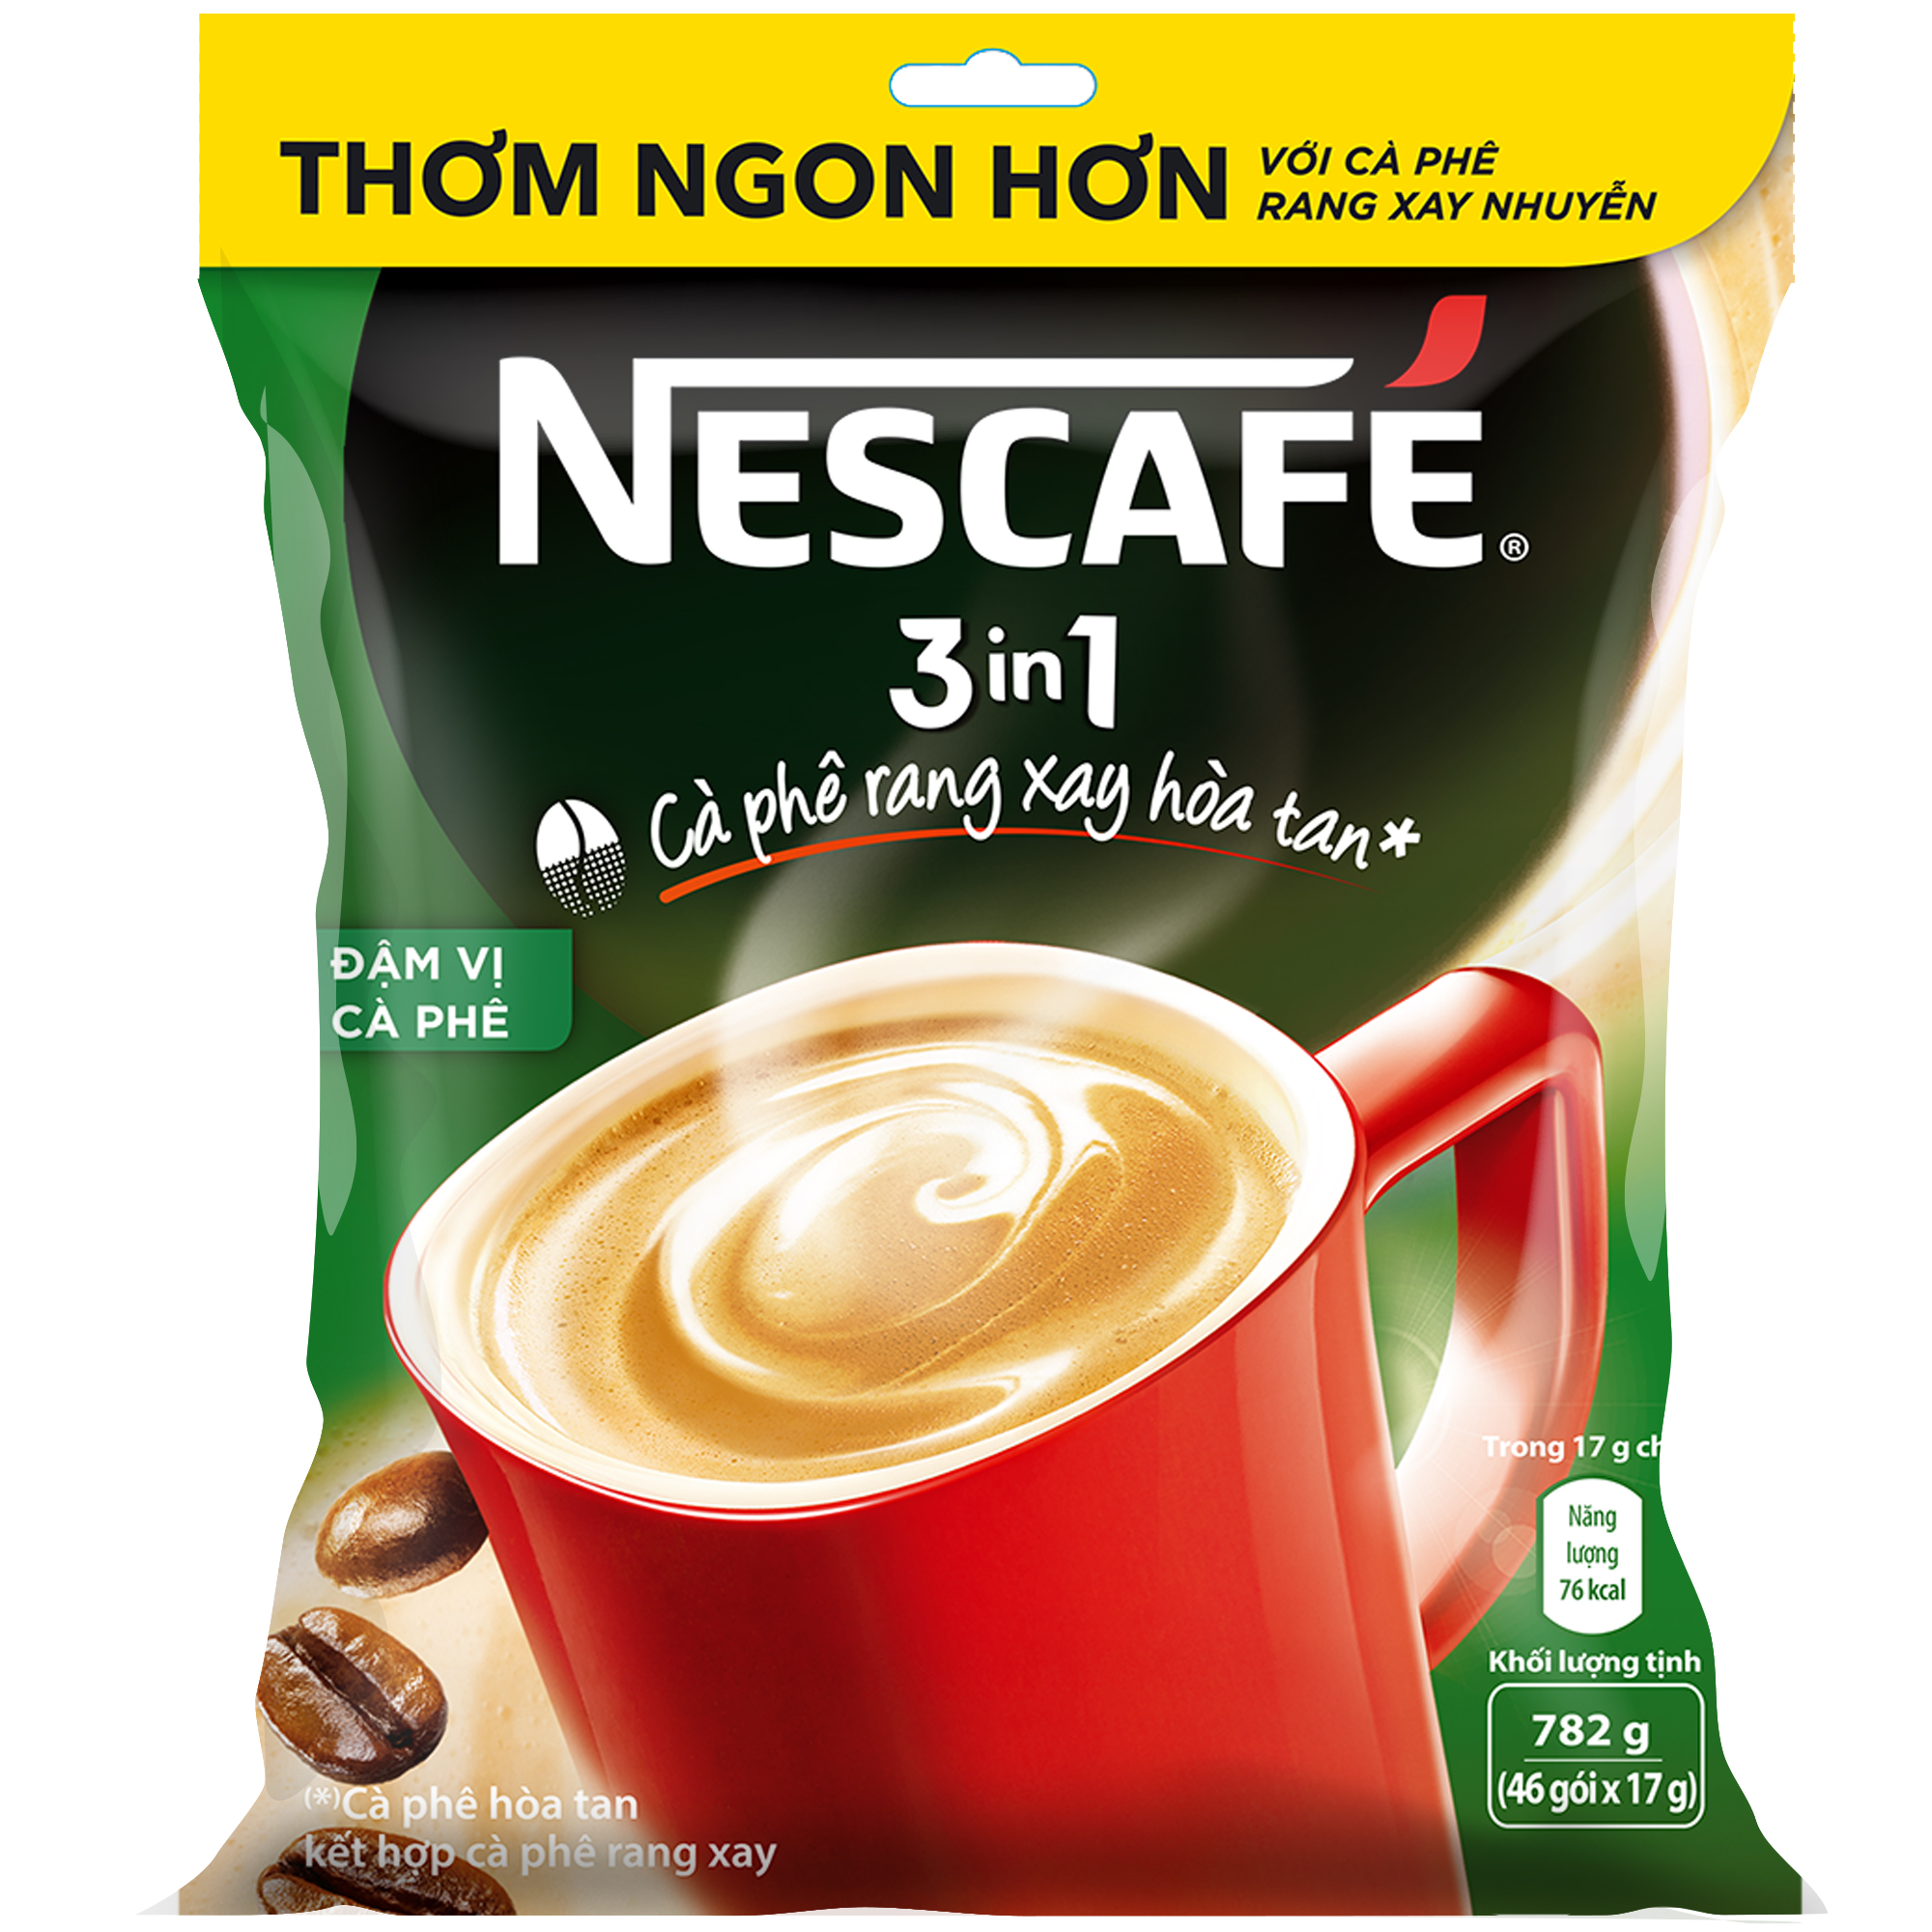 Túi 46 gói Nescafé đậm vị cà phê (17g)